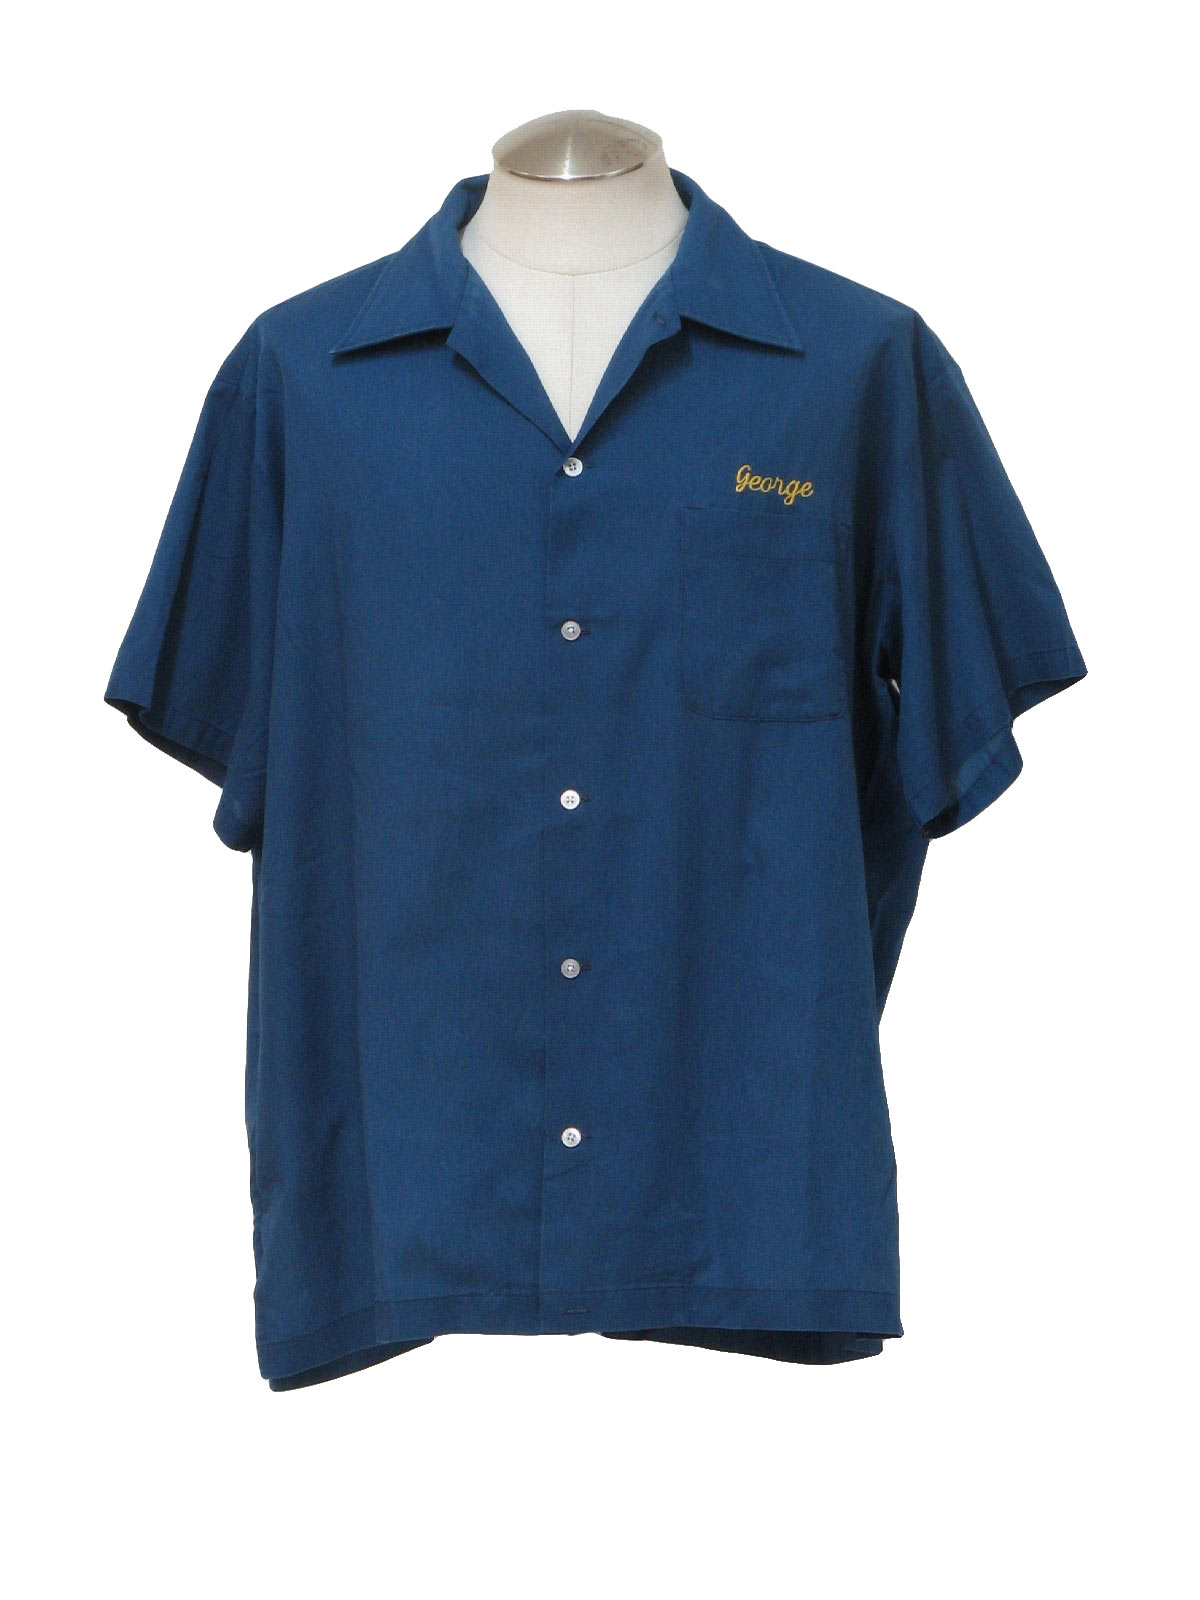 1980's Vintage Hilton Active Apparel Bowling Shirt: 80s -Hilton Active ...